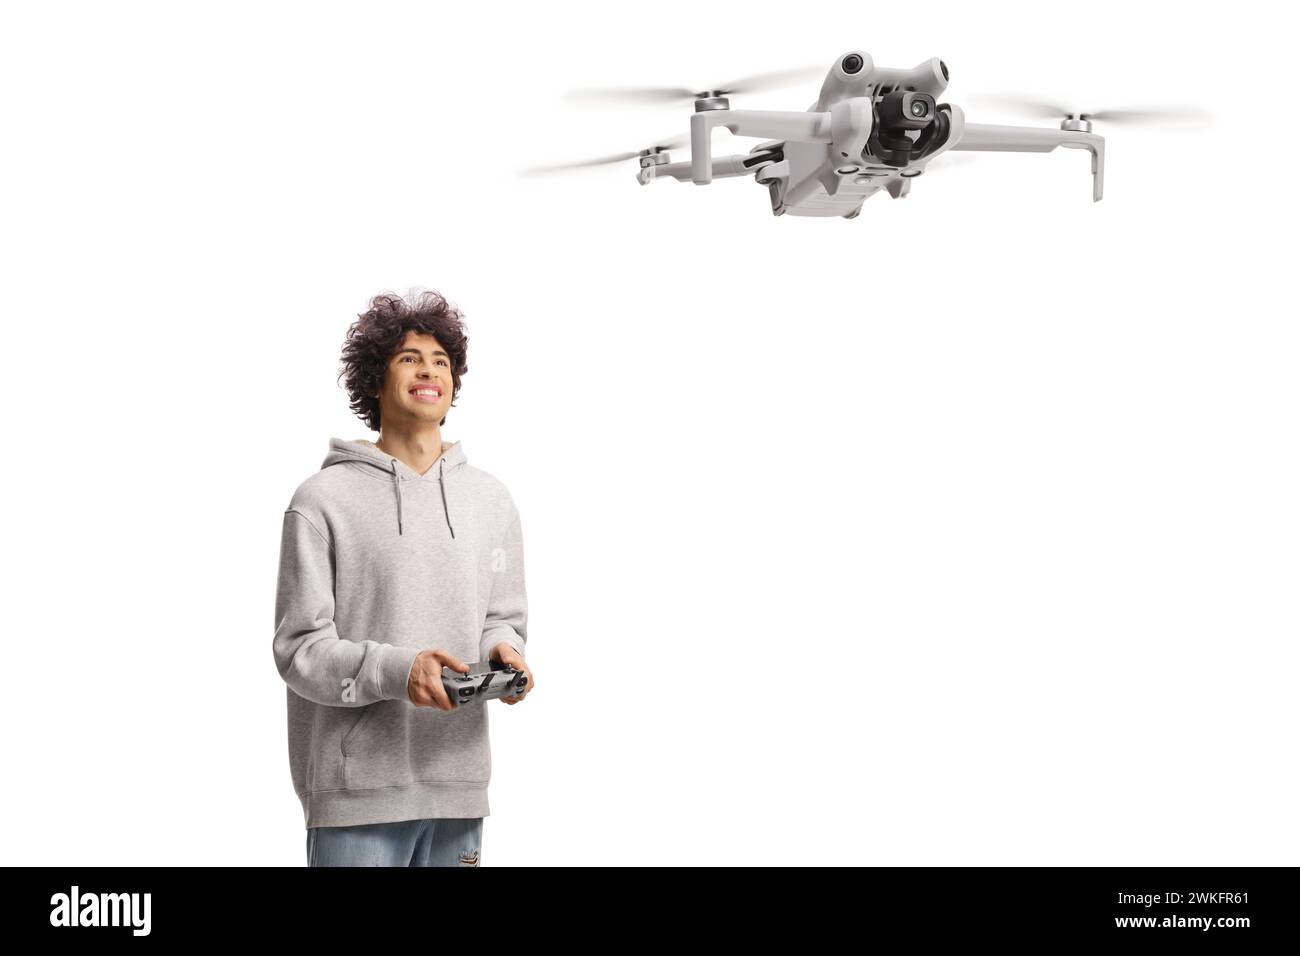 Glücklicher junger Mann, der eine Drohne mit einem Cotroller-Gerät fliegt und isoliert auf weißem Hintergrund aufblickt Stockfoto